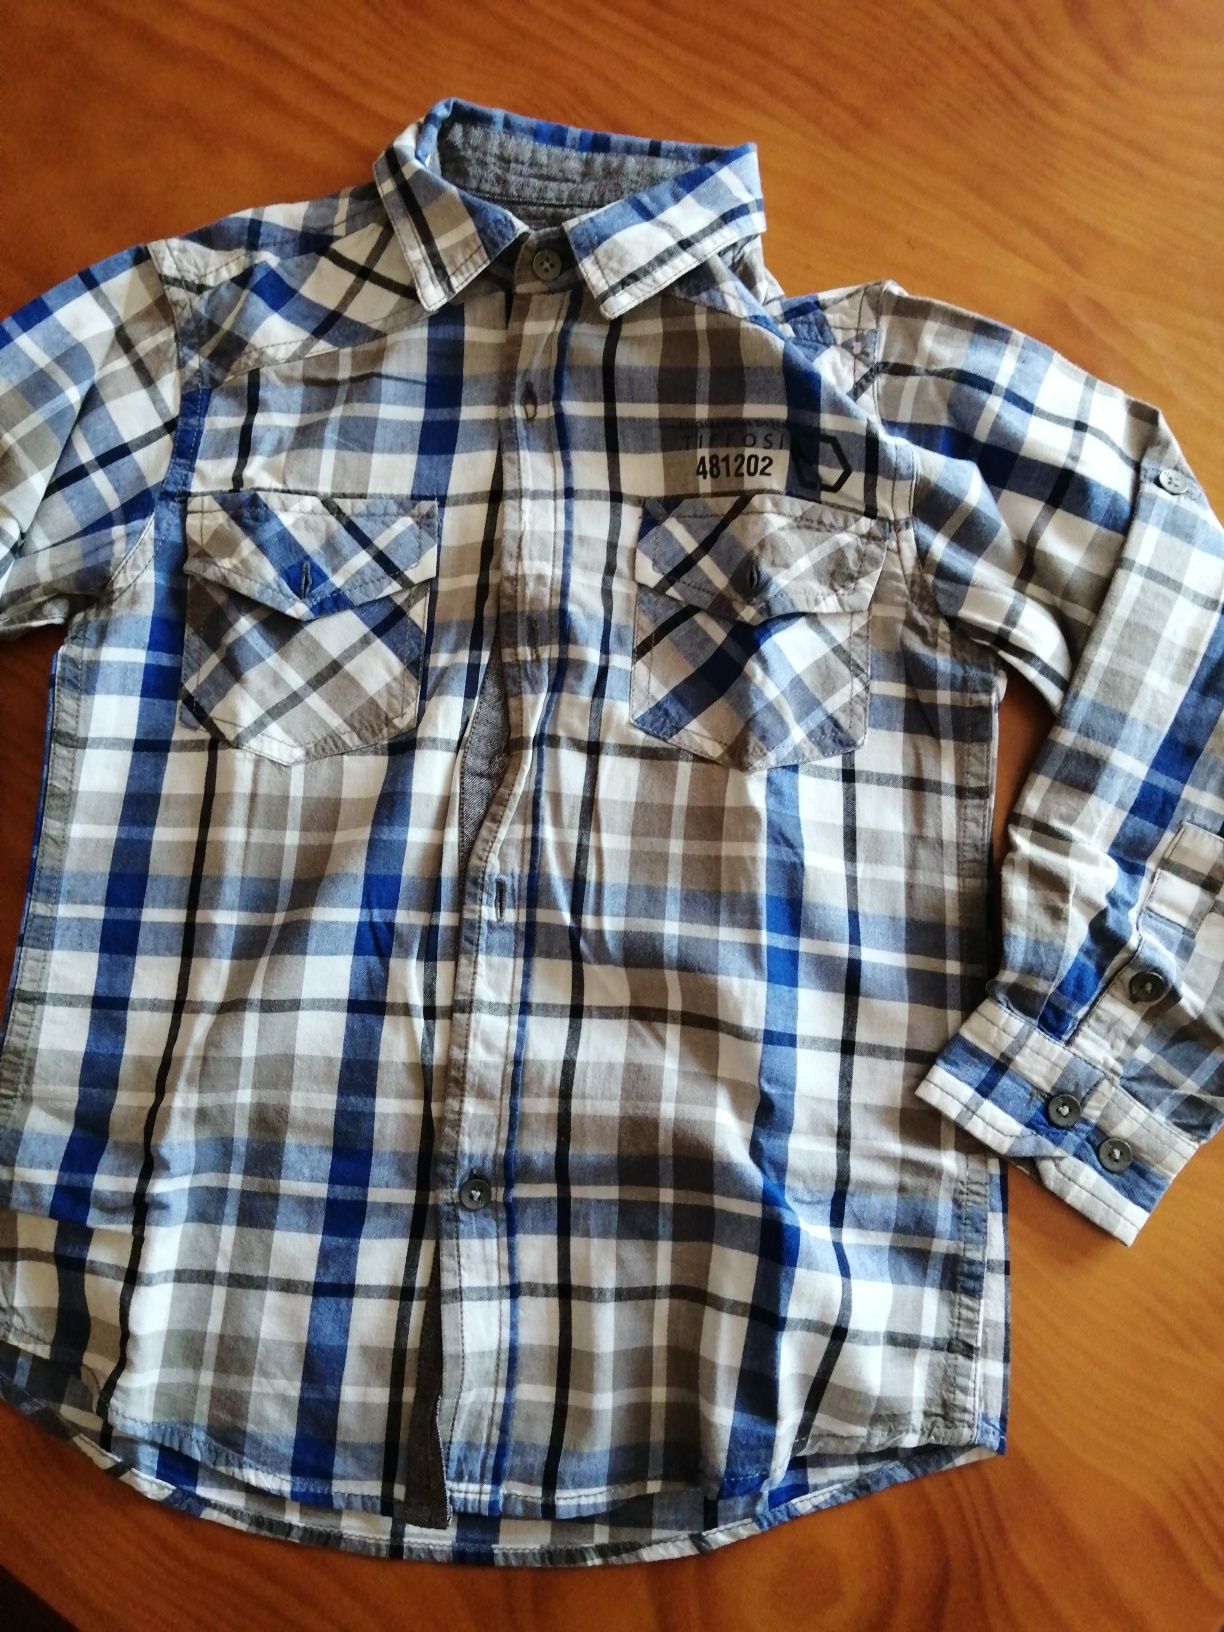 Camisas de menino - conjunto por 3 €